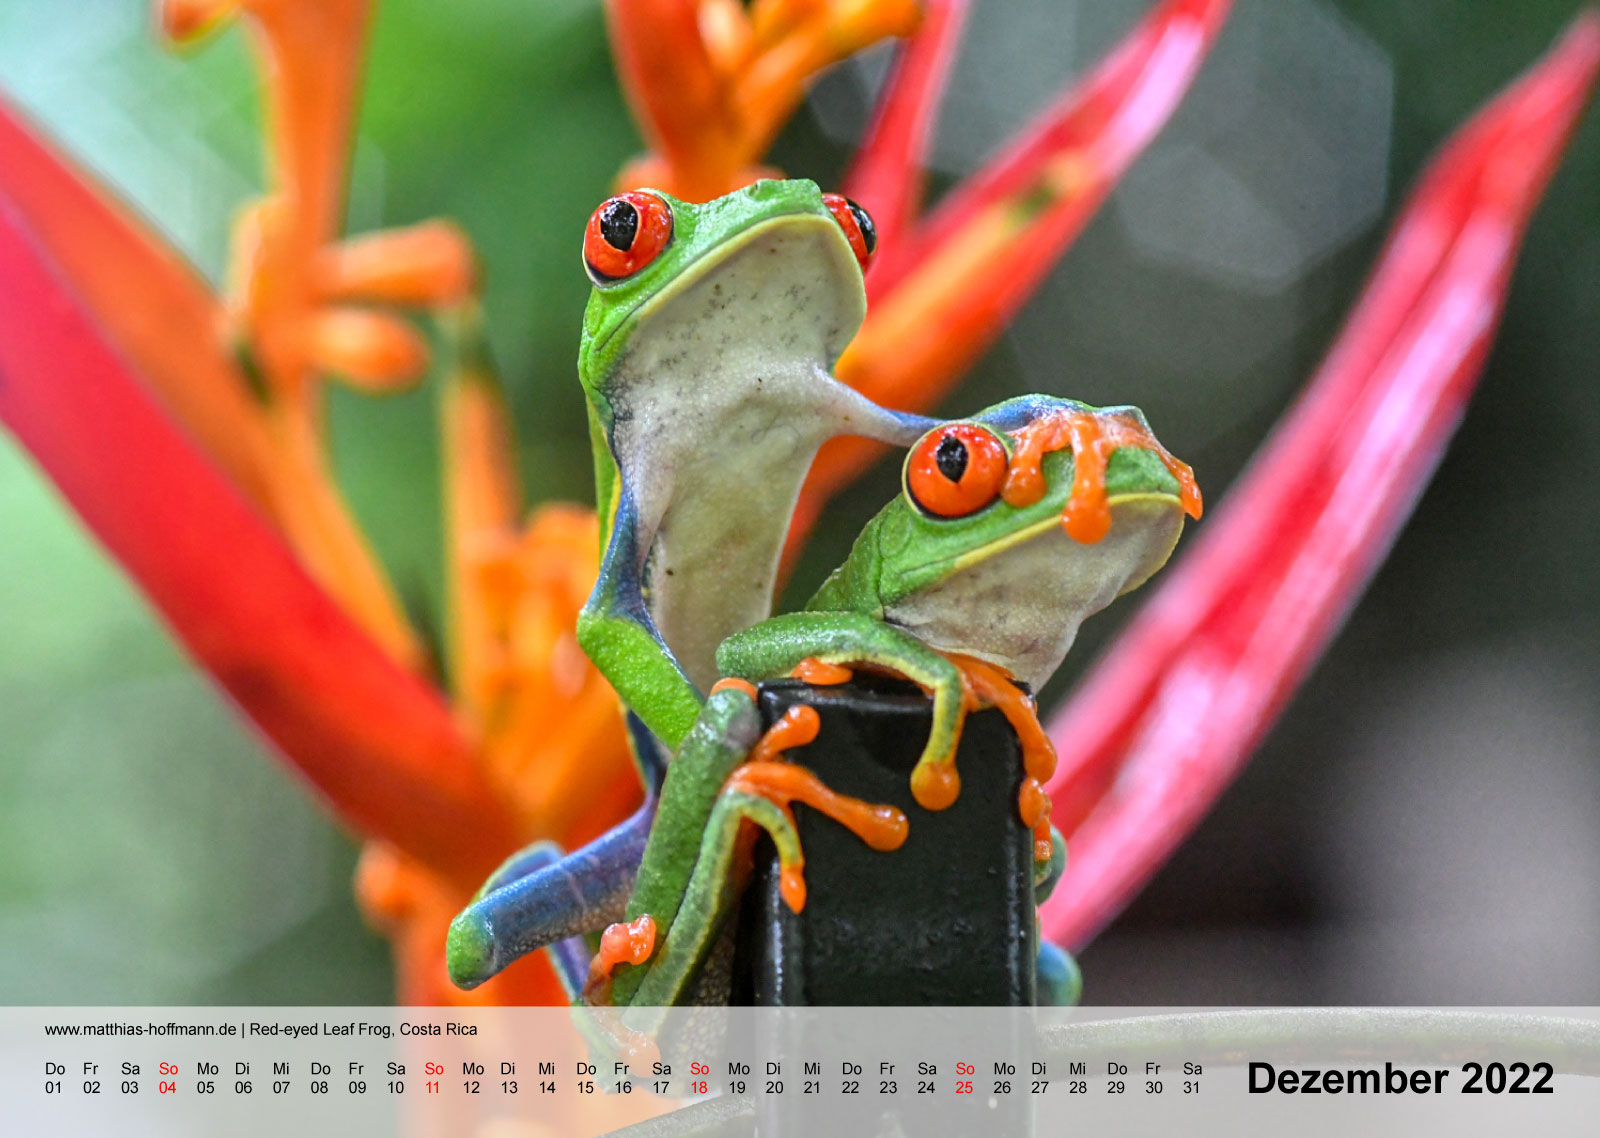 Red-eyed Leaf Frog, Costa Rica | Kalender 2022 - Dezember